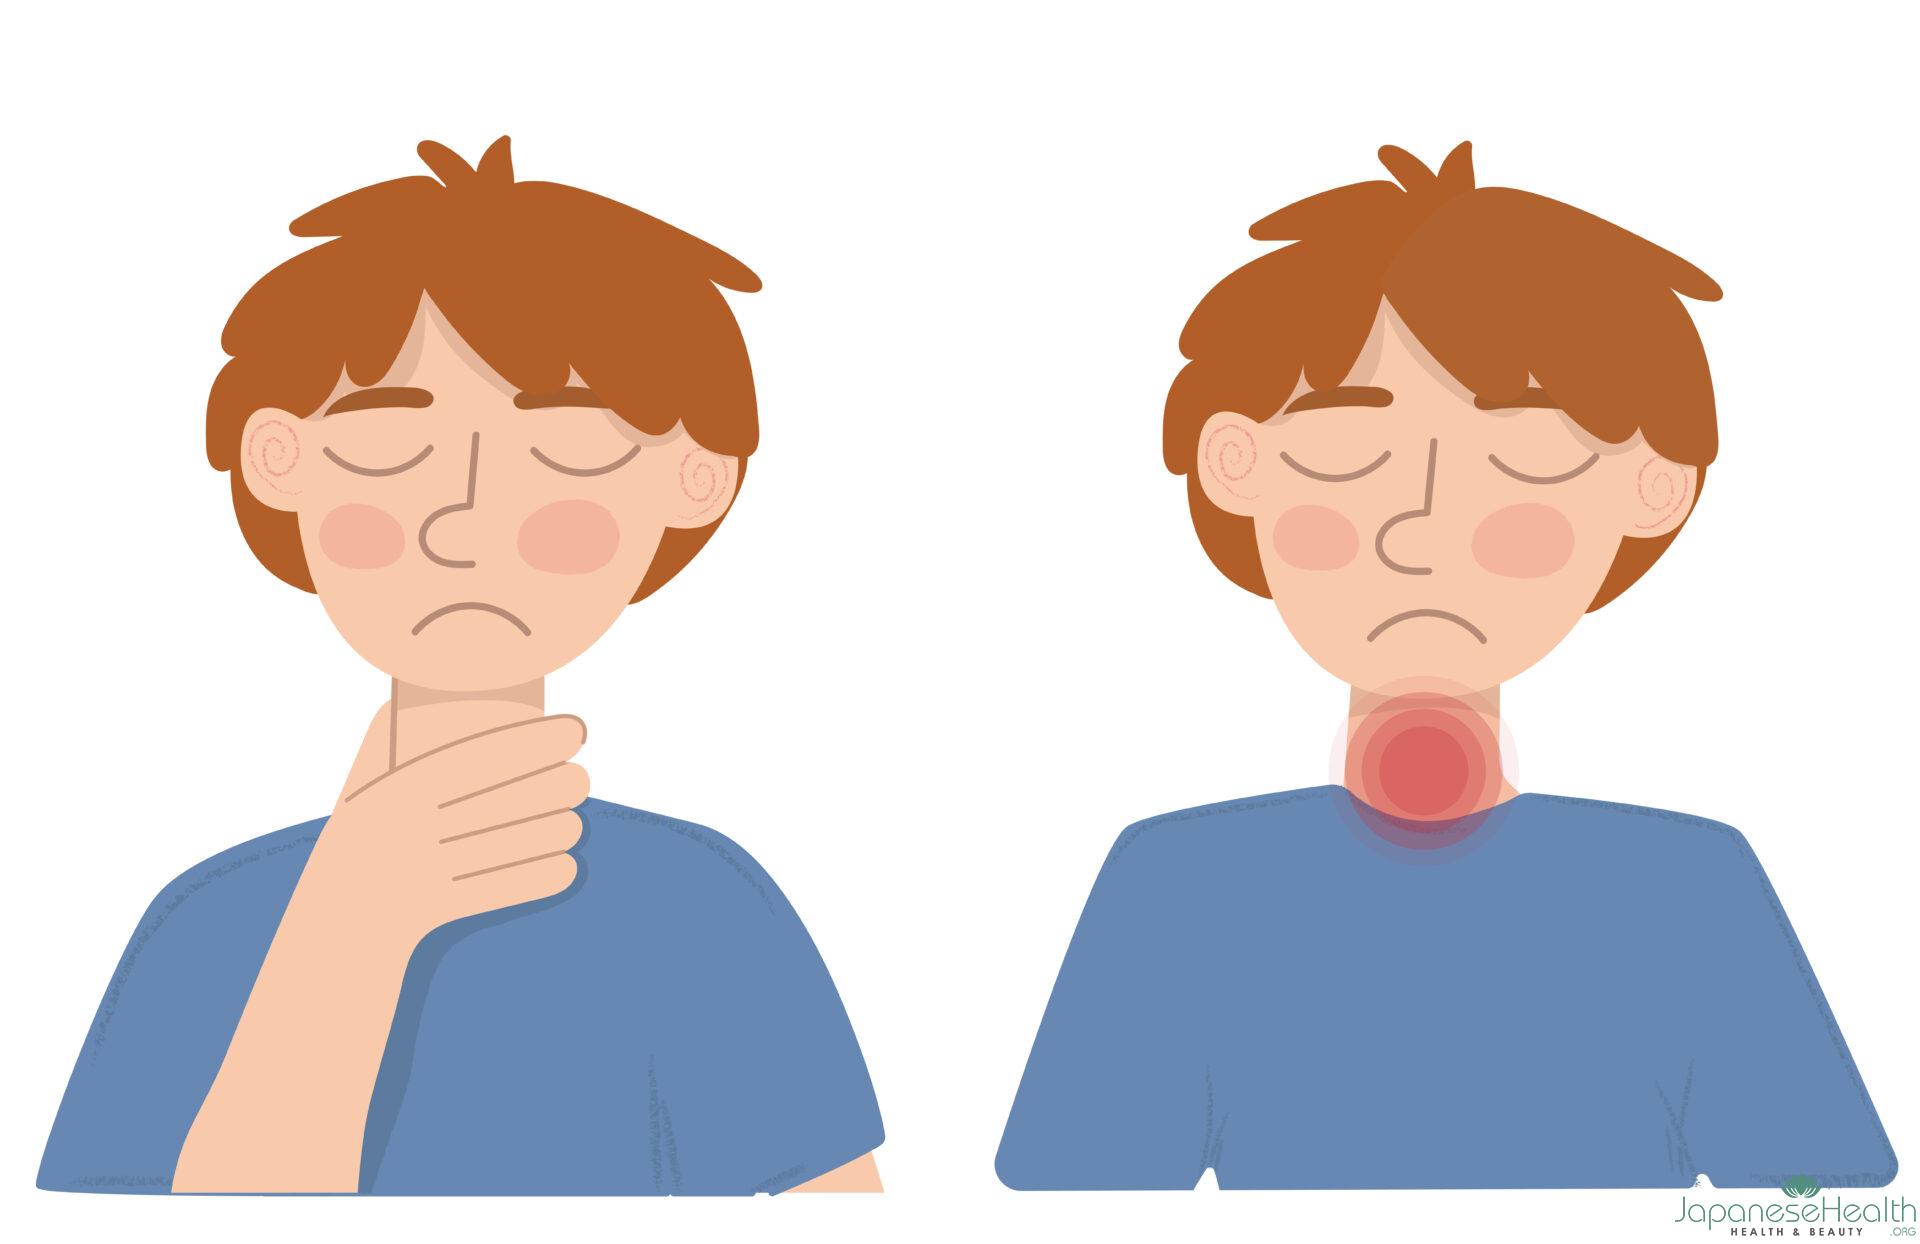 喉の腫れ感とは、喉に違和感、飲み込みにくさ、または喉の締め付け感などの症状が伴う状態を指します。